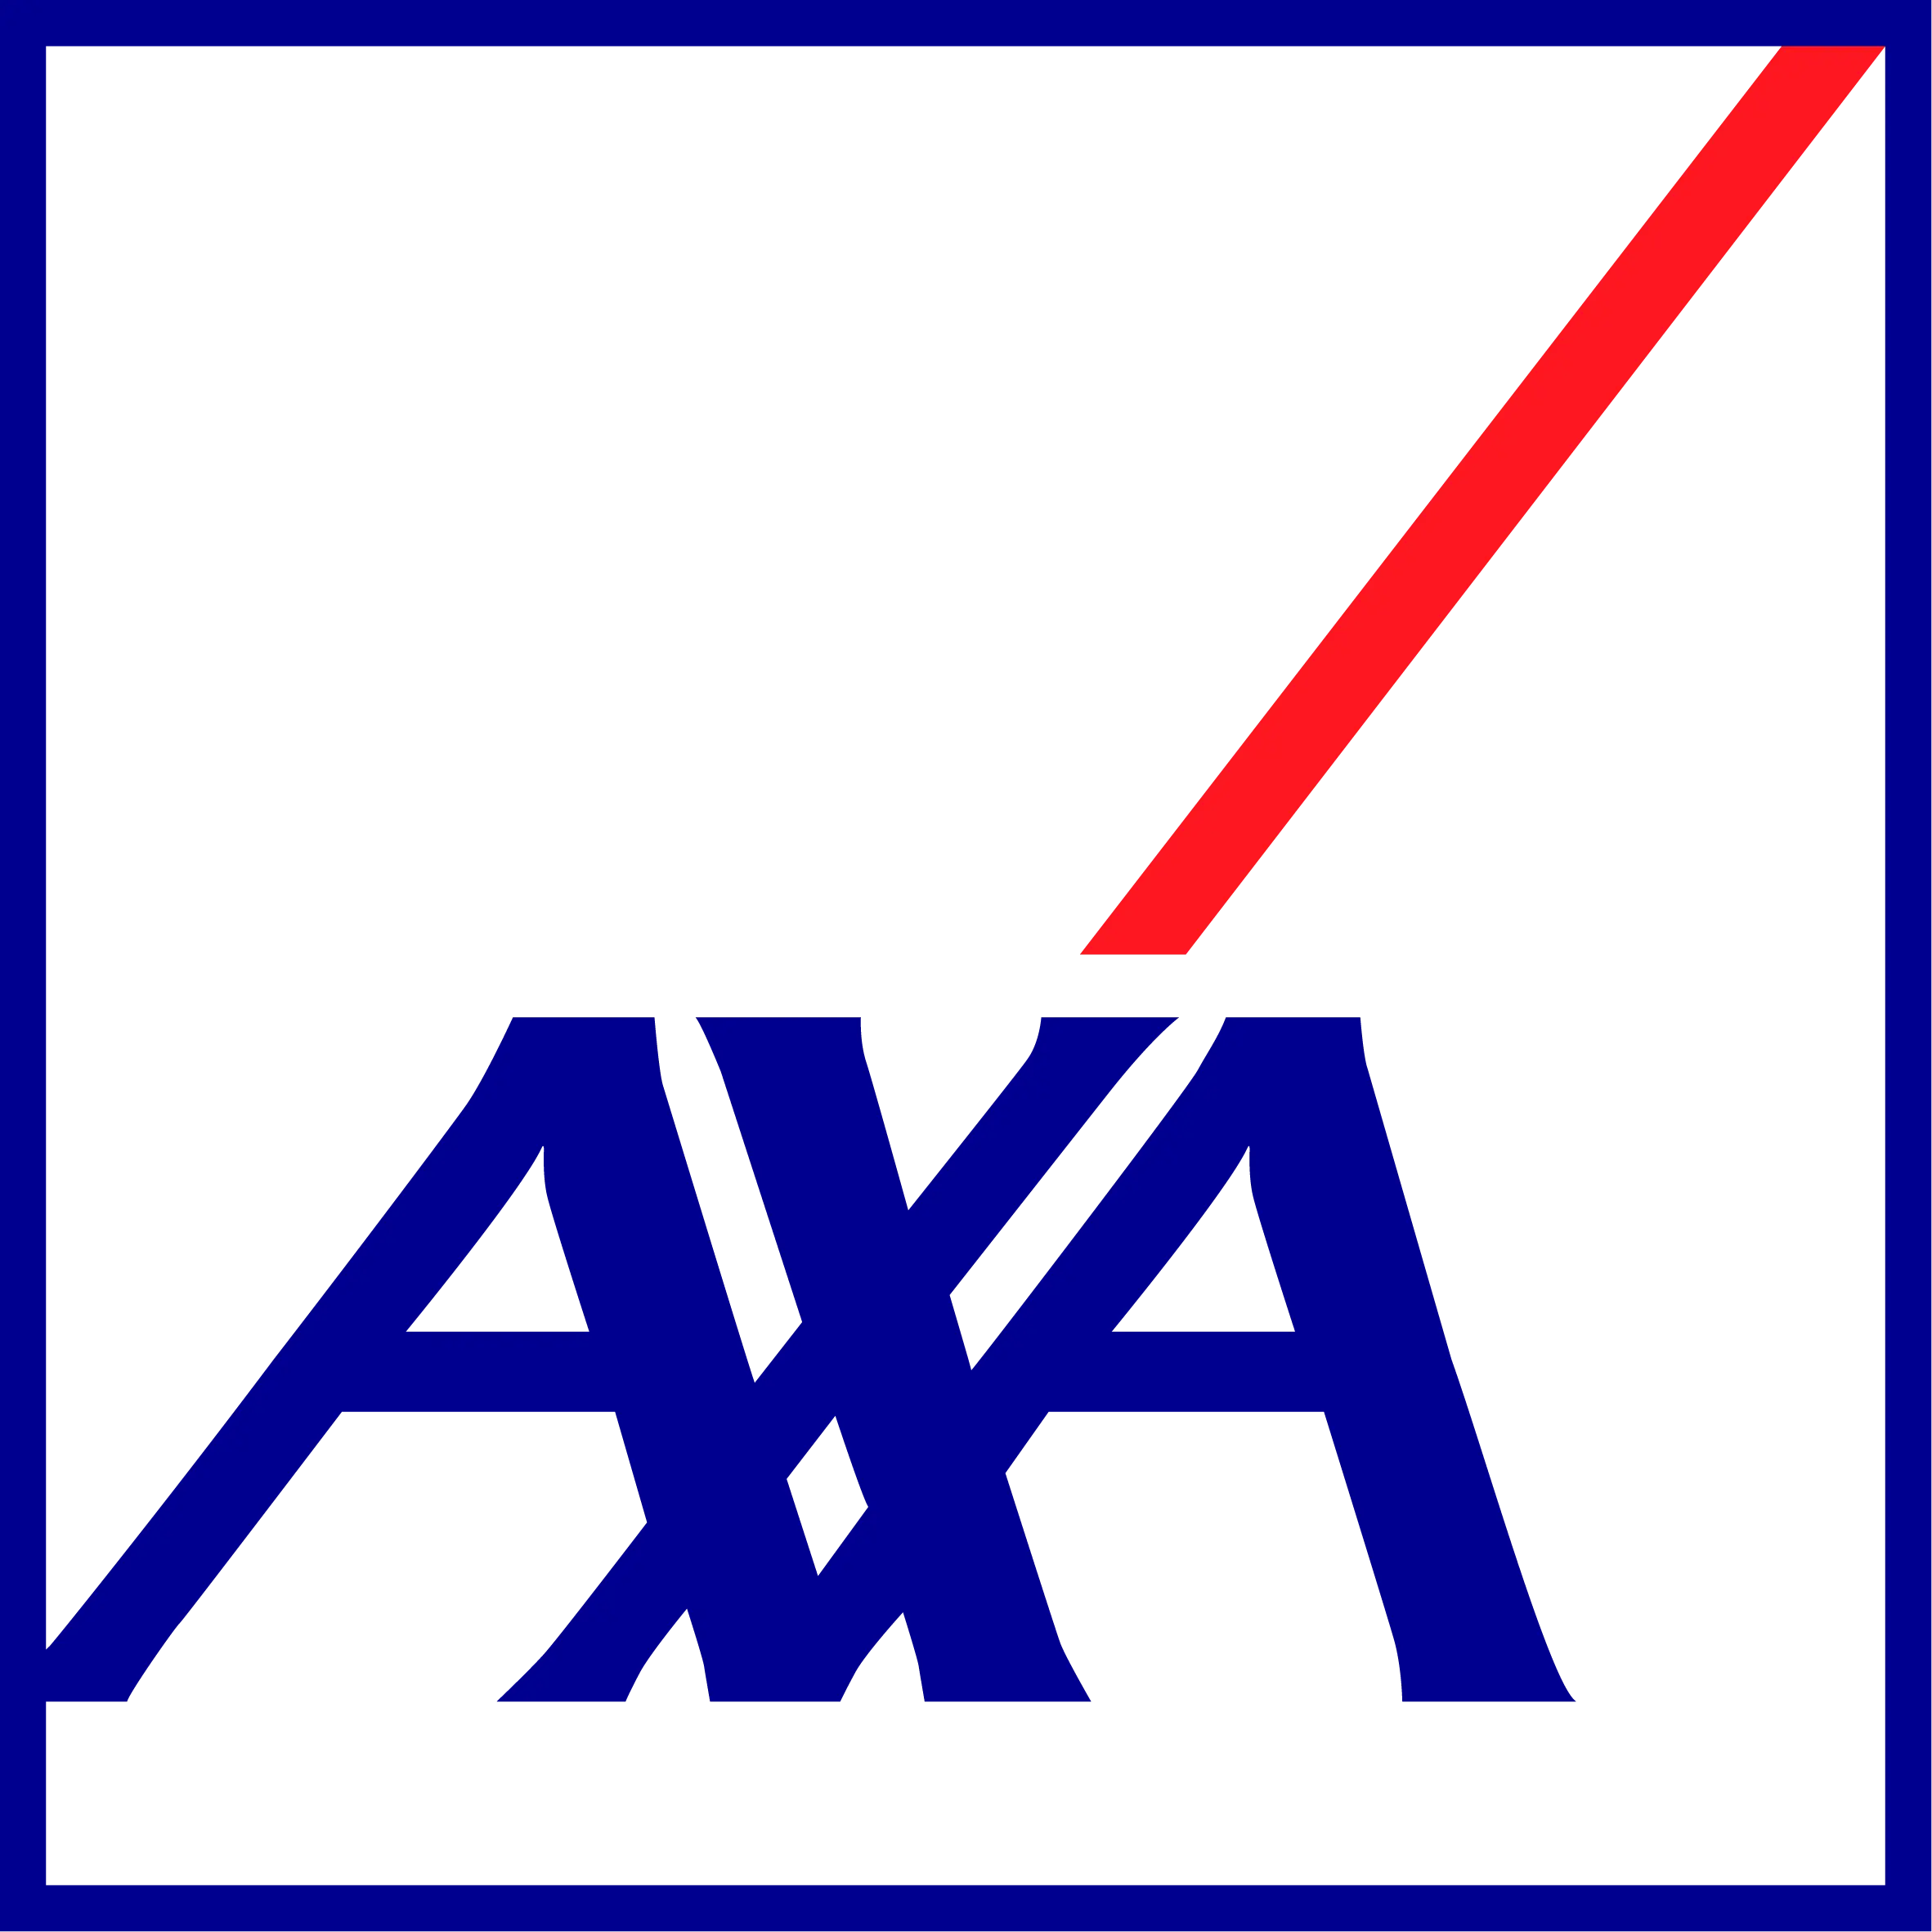 Logo von AXA